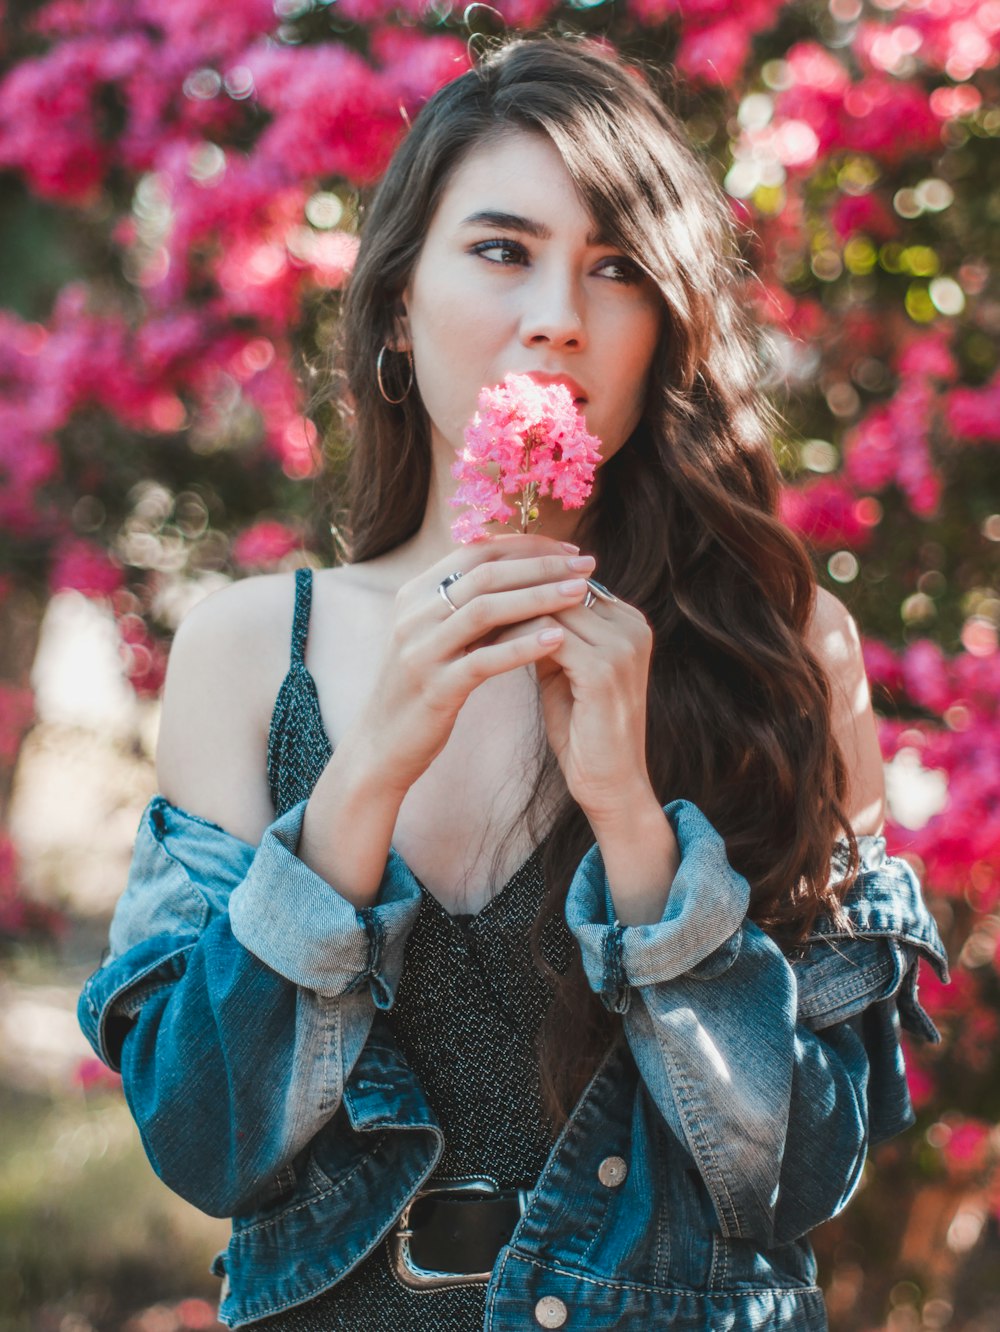 분홍색 꽃을 들고 있는 여자